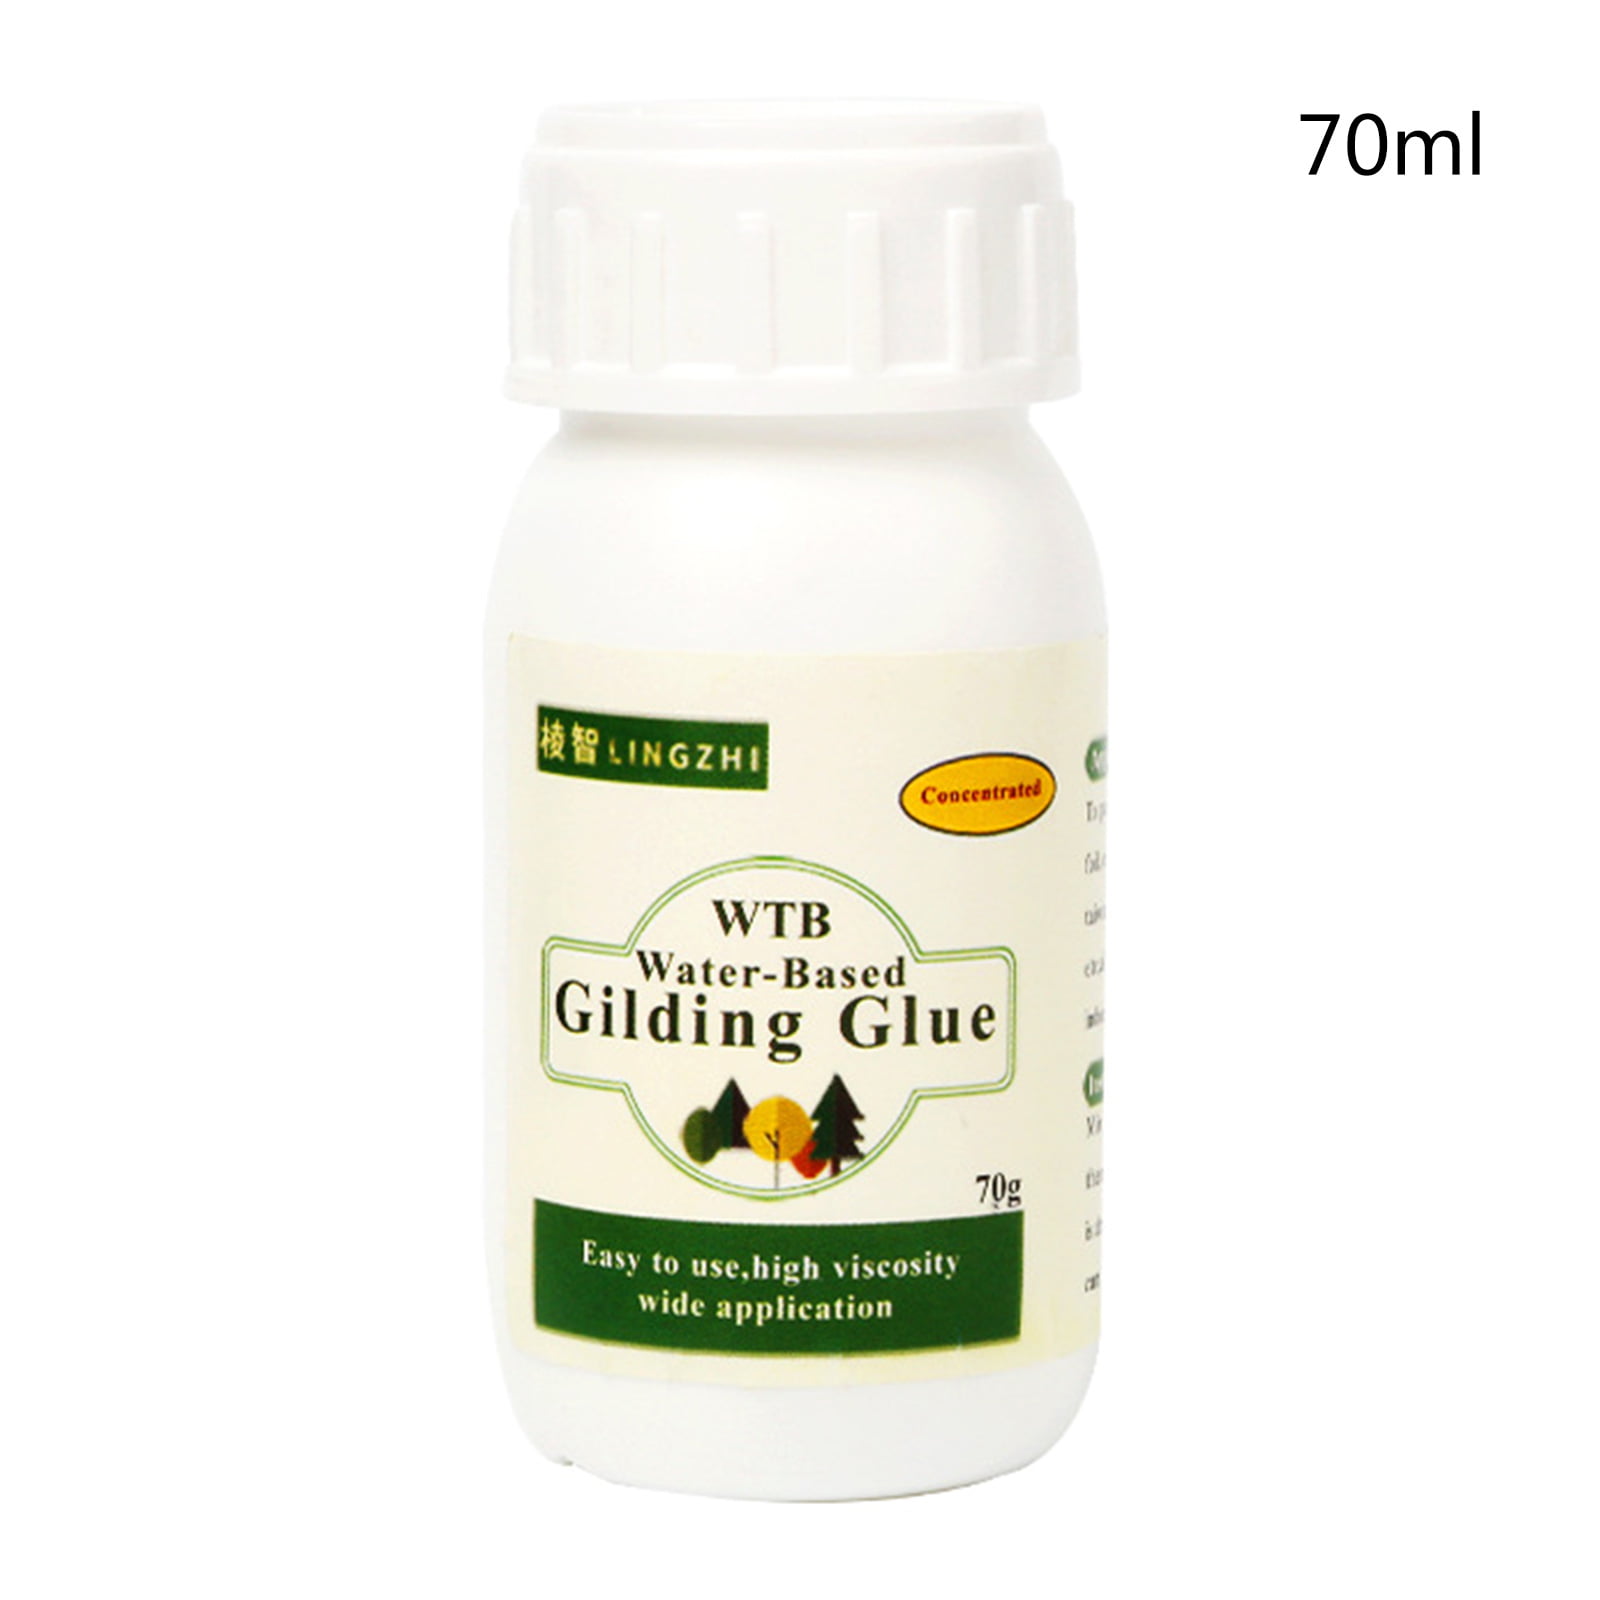 Order UGLS Super Glue Adhesive Water Based Gilding Glue for Gold